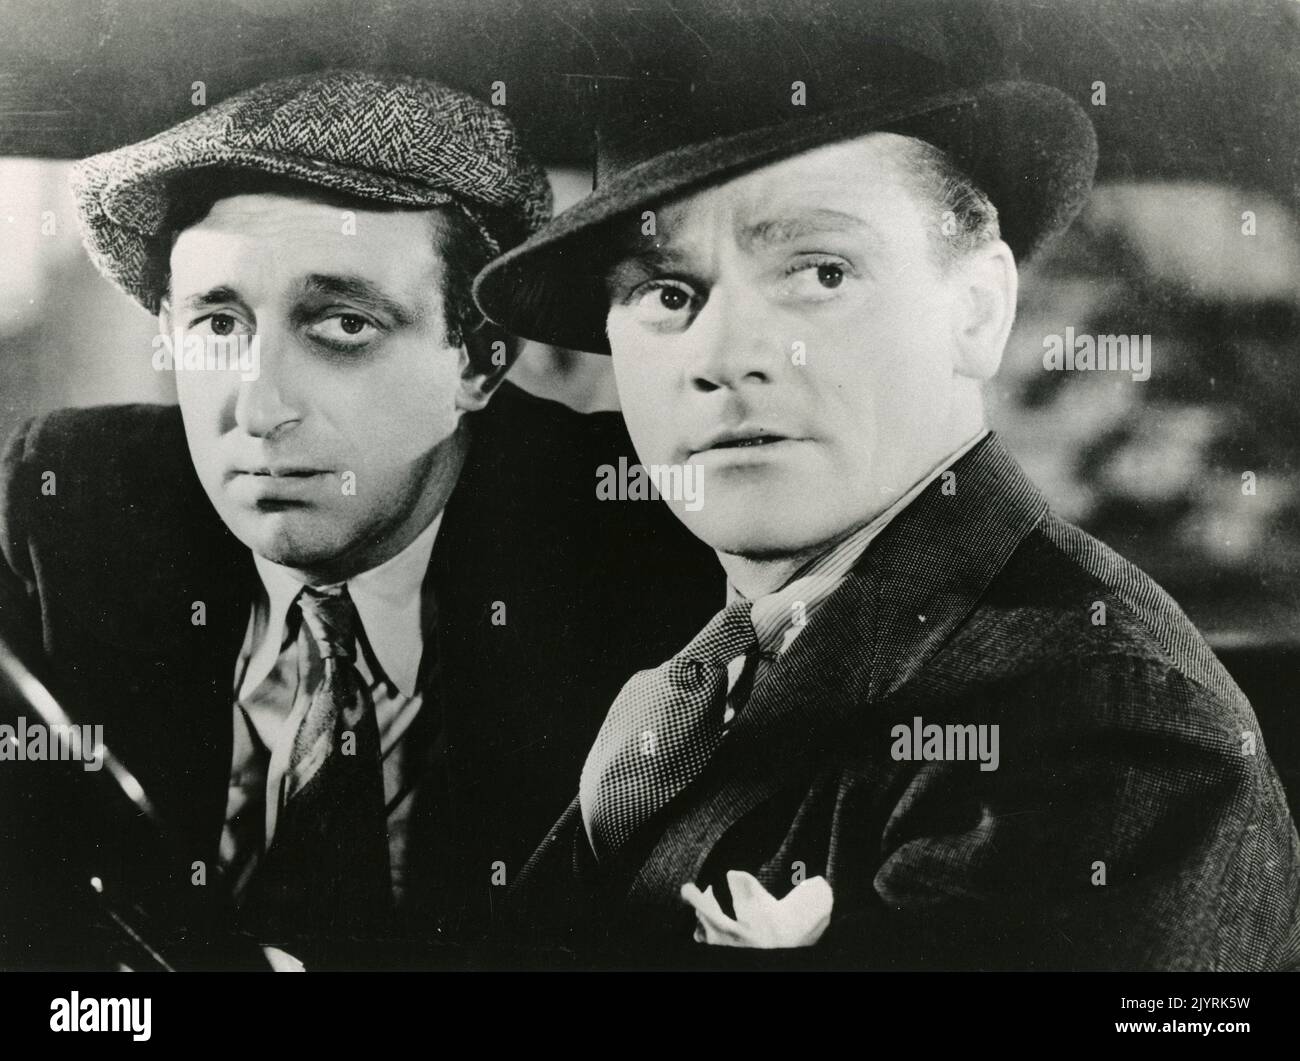 Acteurs Robert Barrat et James Cagney dans le film The St. Louis Kid, USA 1934 Banque D'Images